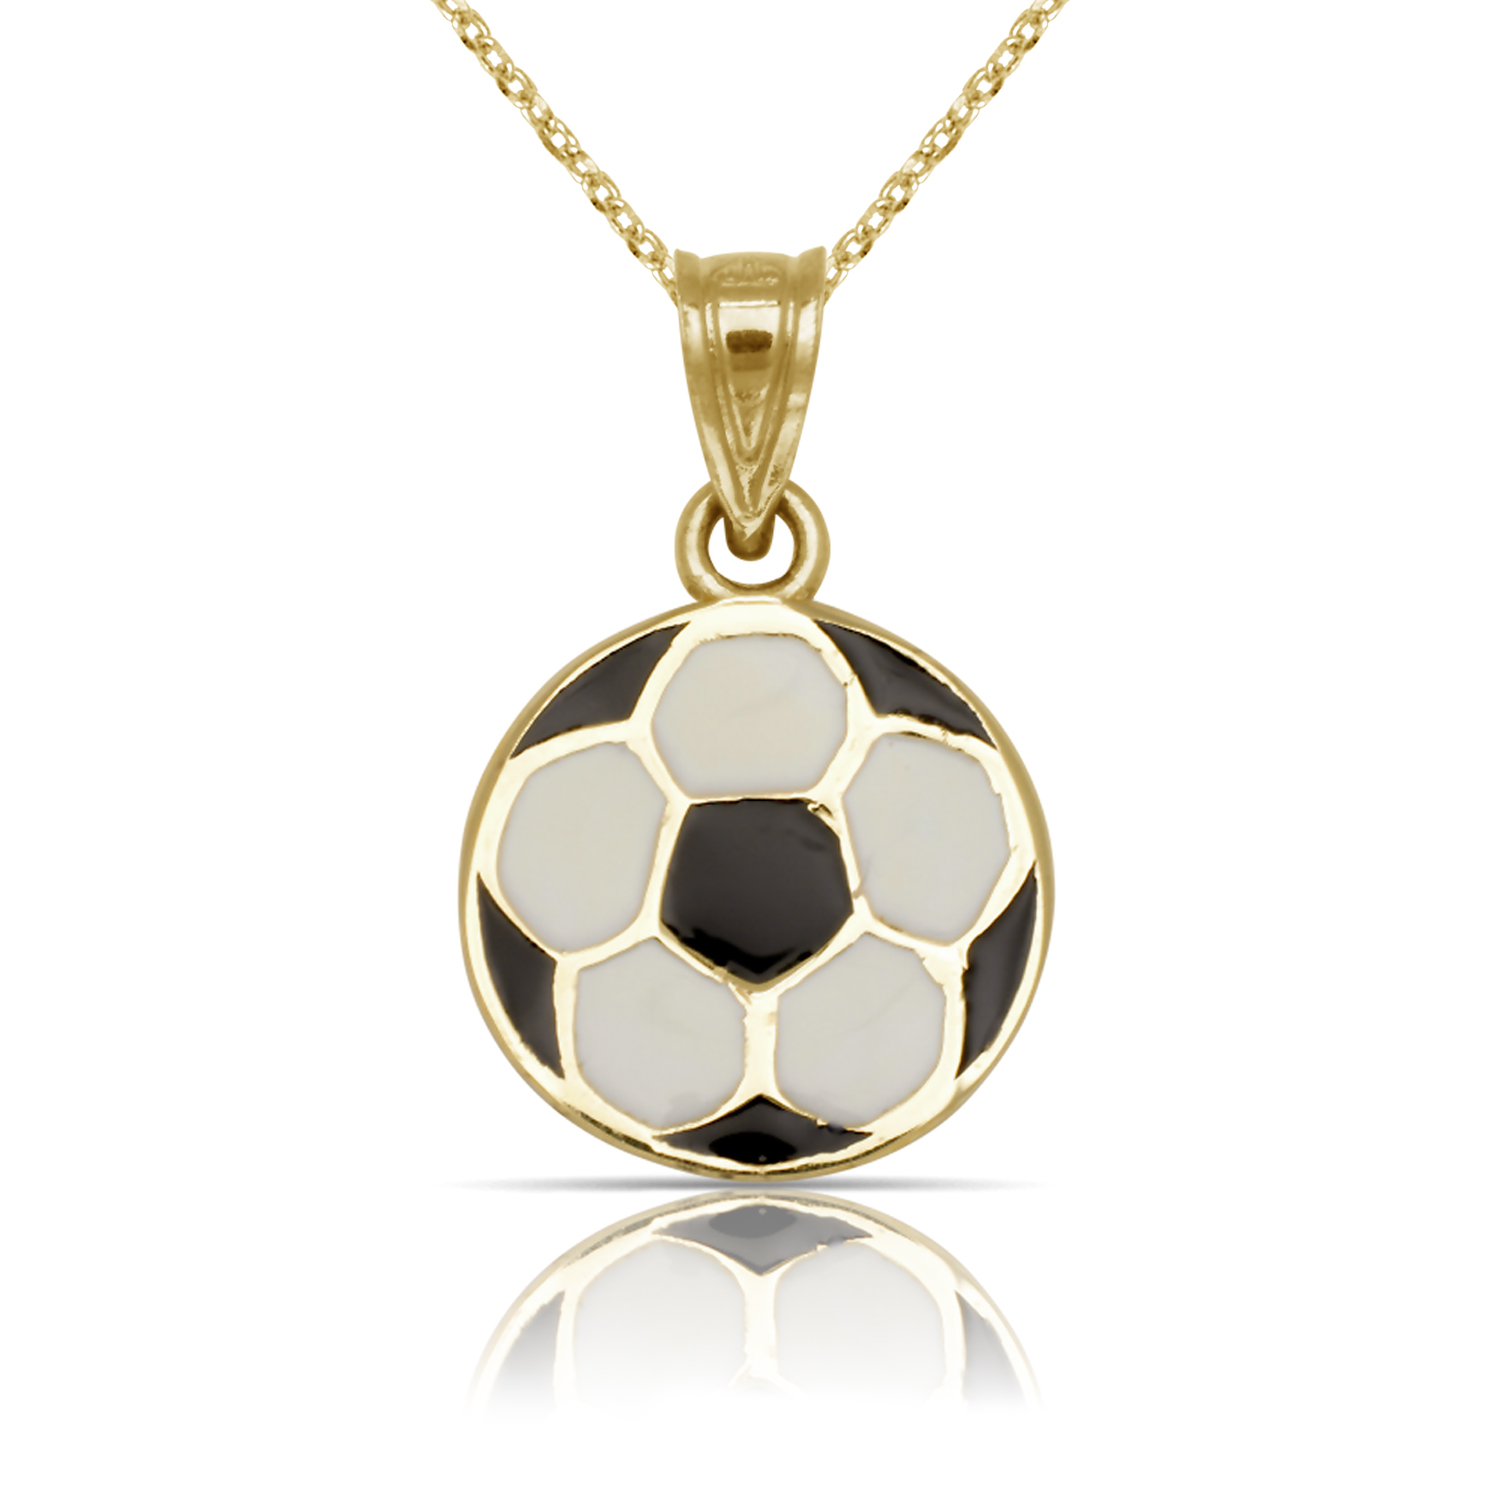 
14k Yellow Gold Enamel Soccer Ball Pendant
